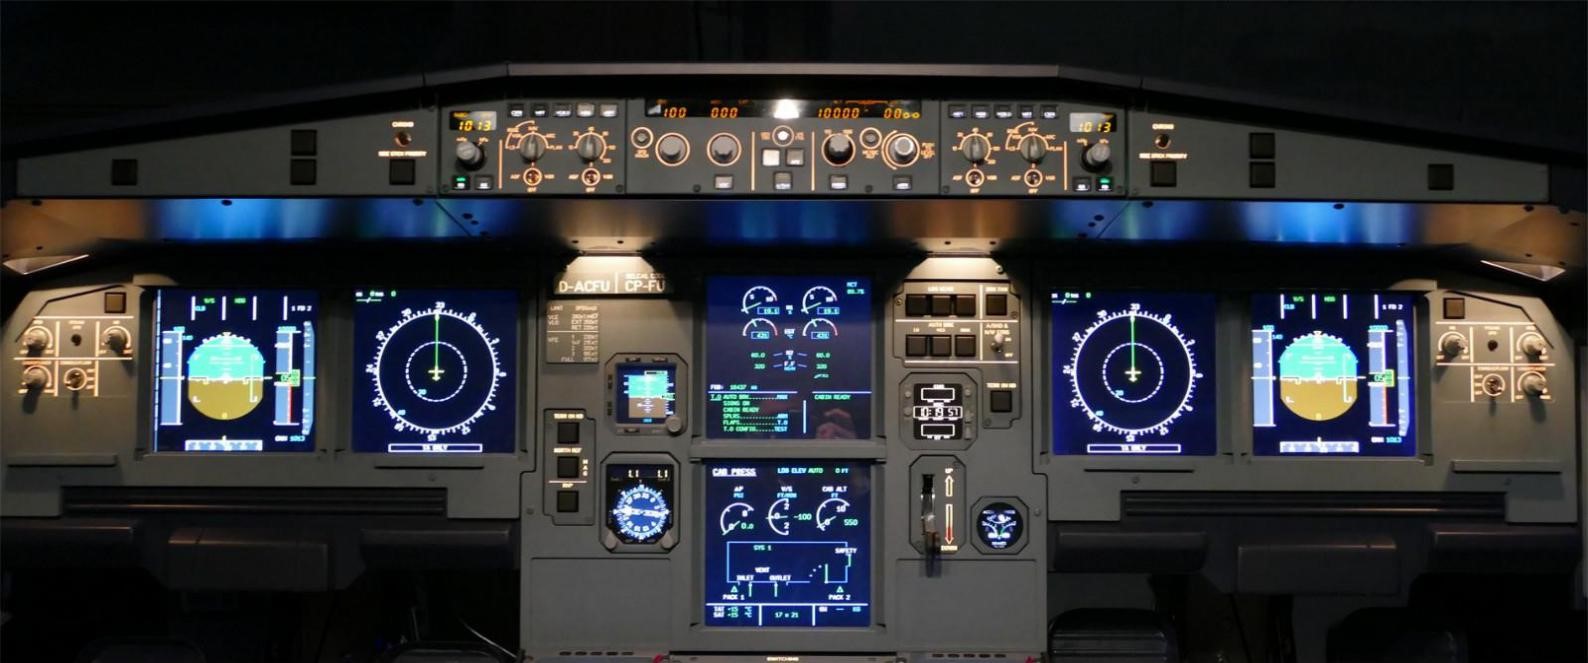 飞行者联盟空客A320模拟舱 整舱产品发布！-5031 